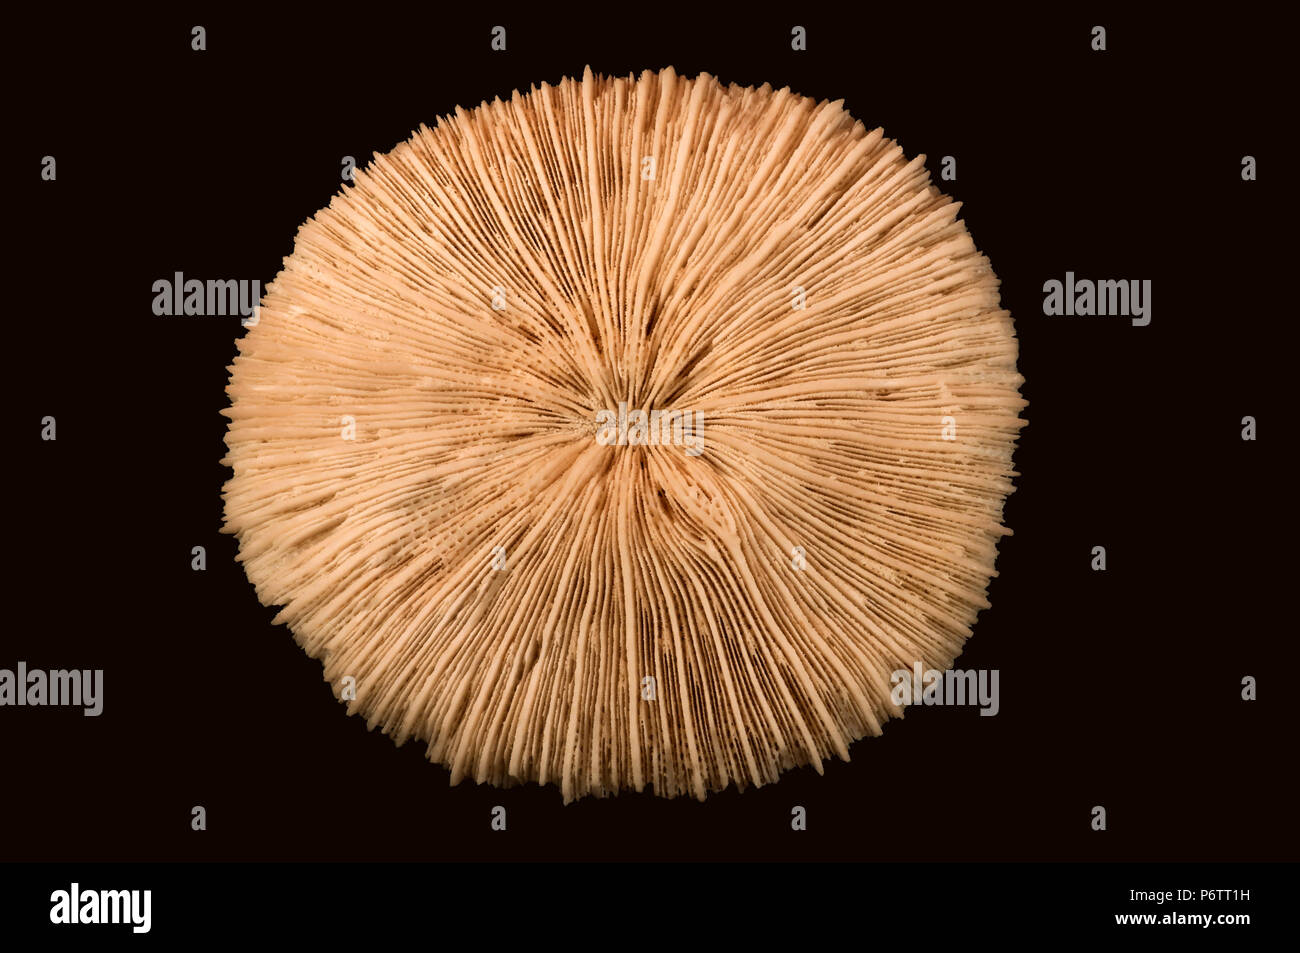 Skelett von Coral Fungia sp. Pedal Disc - Septum (verkalkte radialen Wänden). Klasse Blumentieren, Stamm Cnidaria, Anemone, Stockfoto